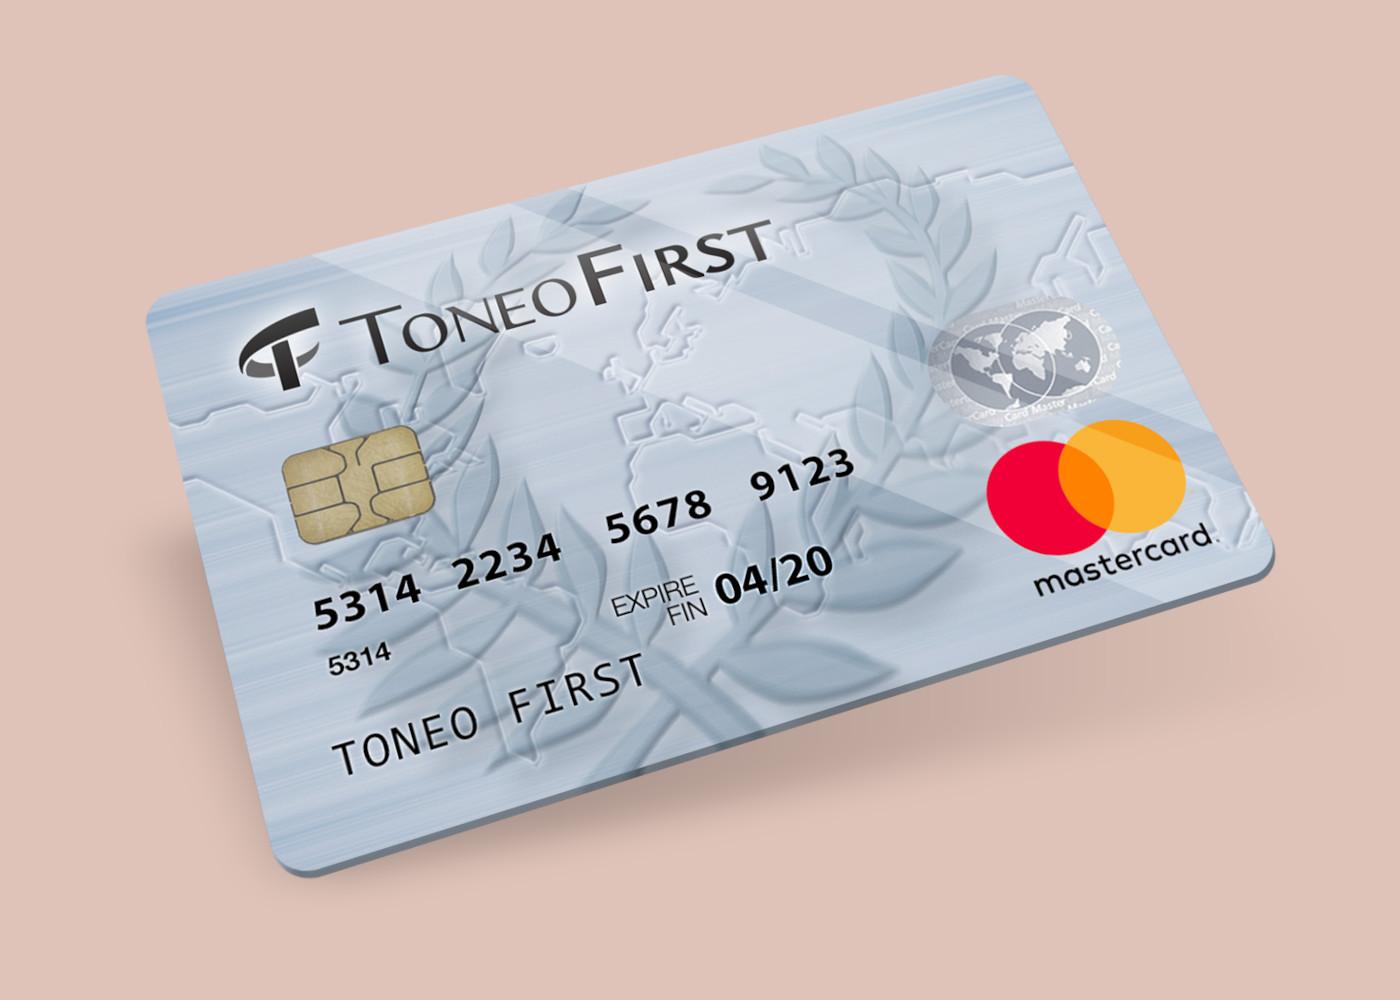 Toneo First Mastercard €15 Gift Card EU 19.63 $